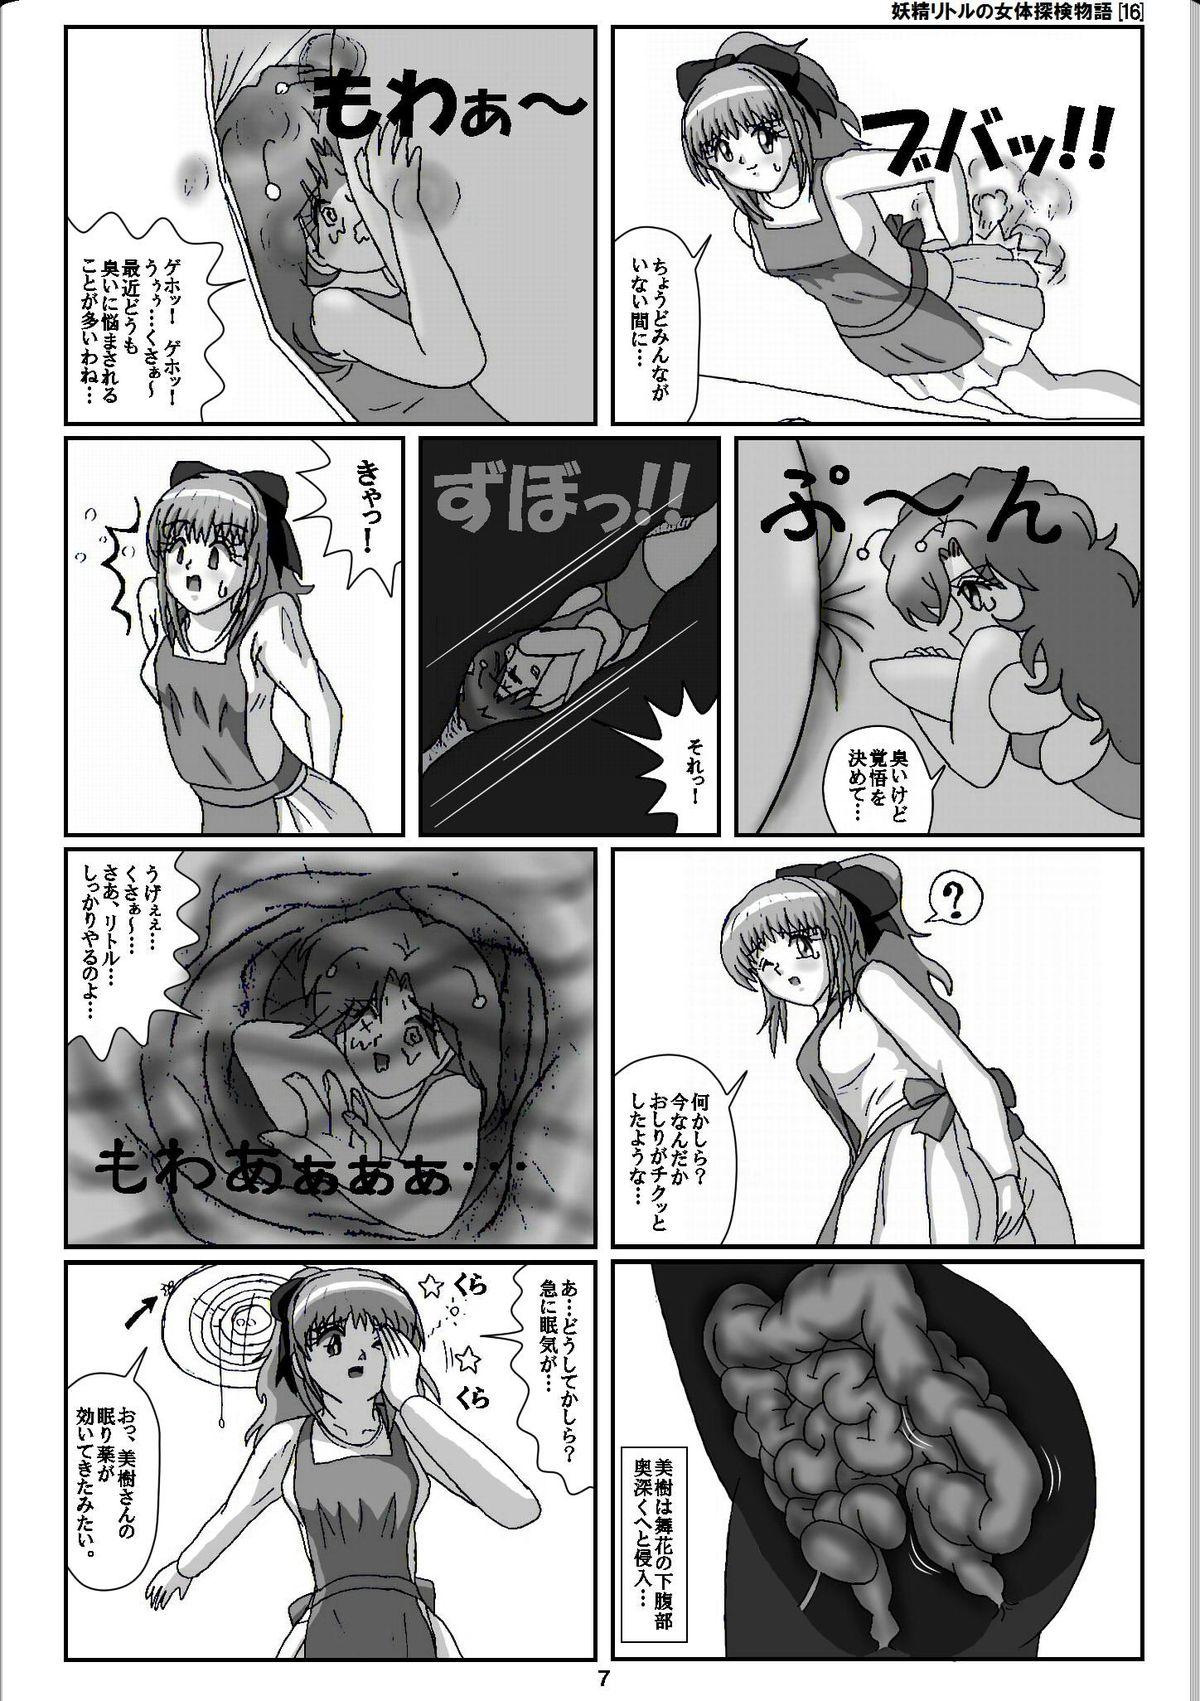 Vagina Yousei Little no Nyotai Tanken Monogatari Gets - Page 7